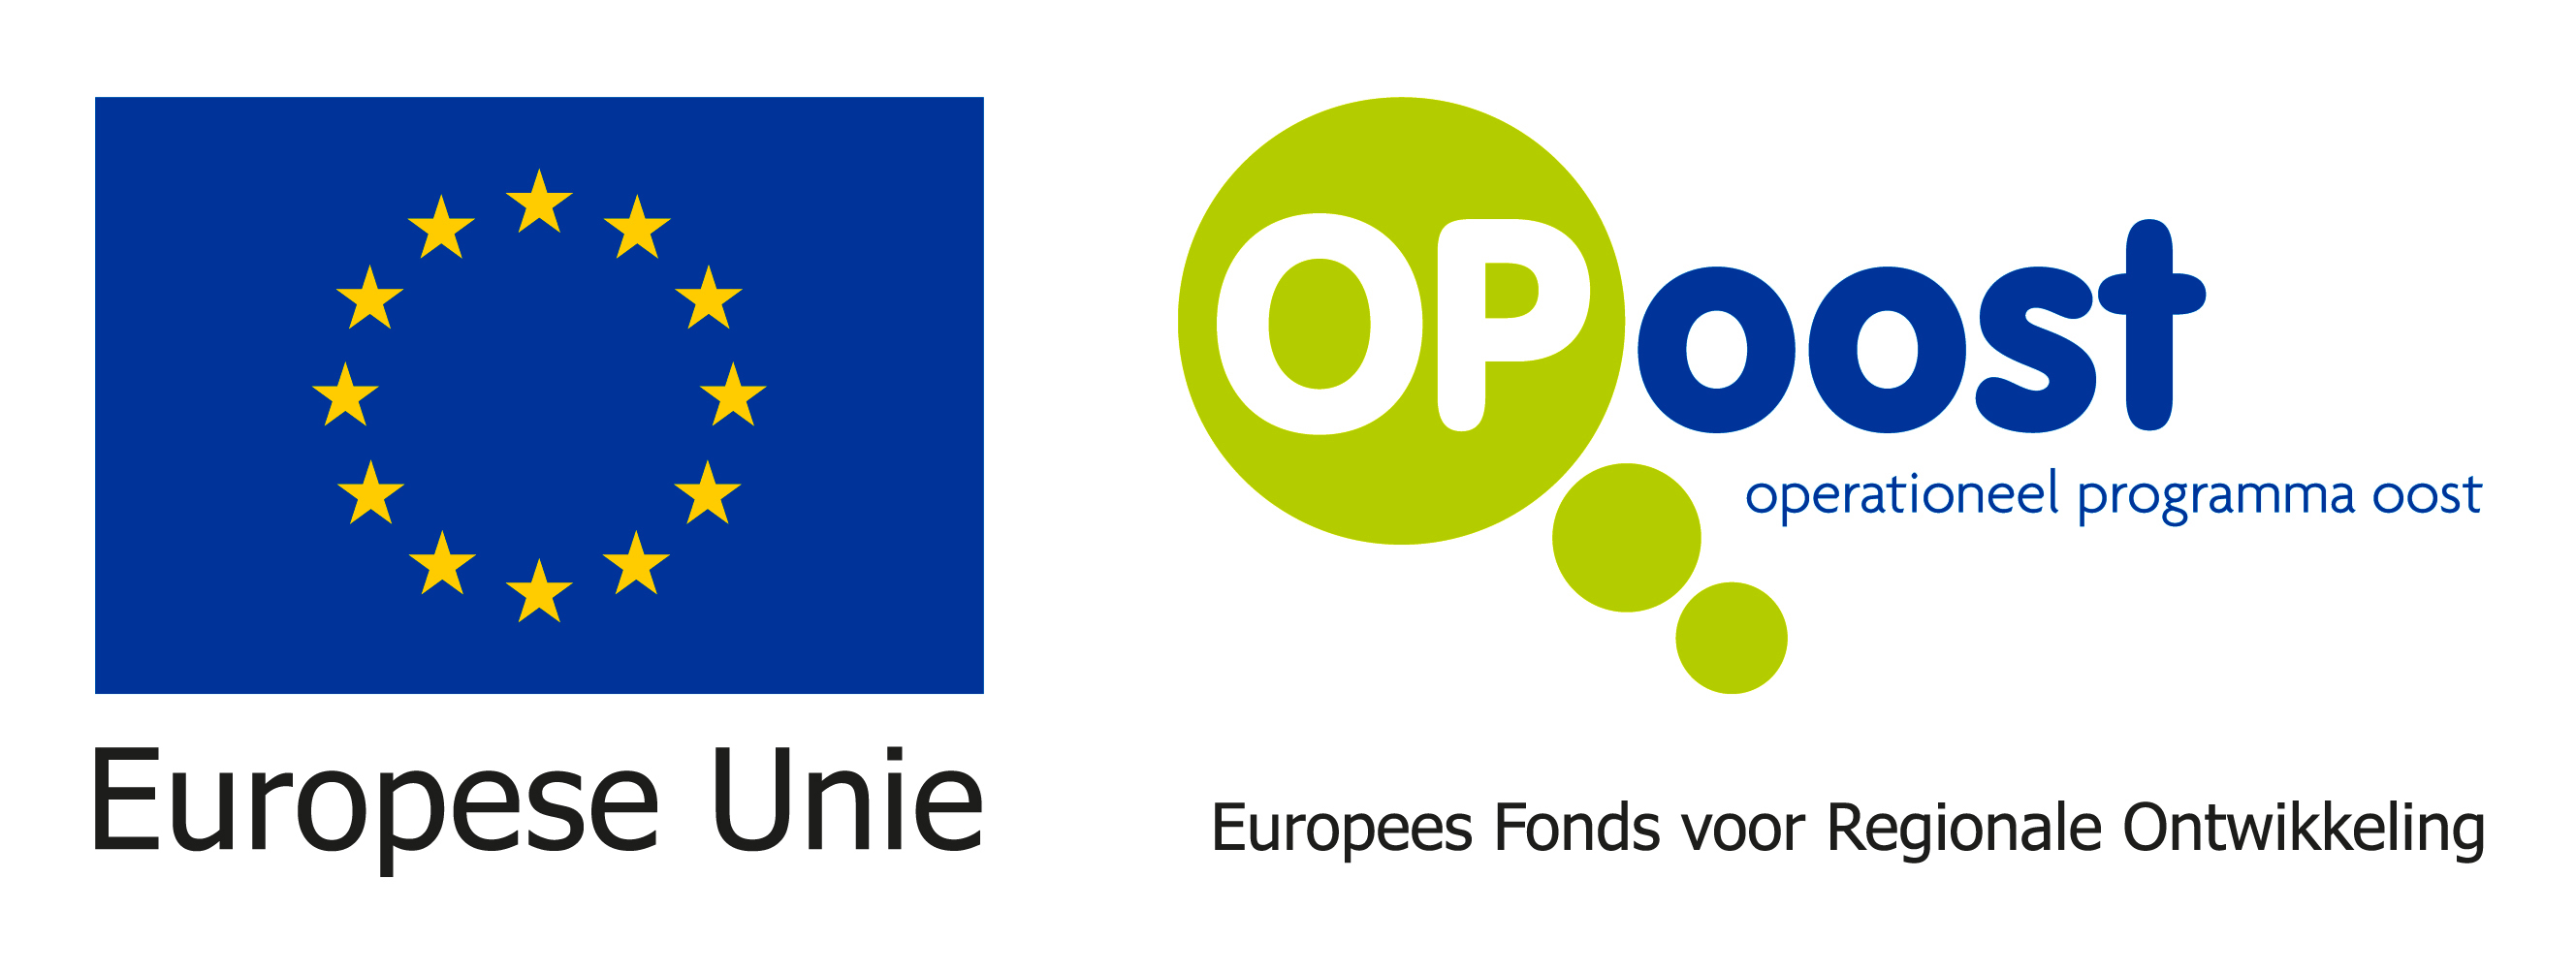 OP-Oostmetondertitel_en_EU-logo-NIEUW-D04